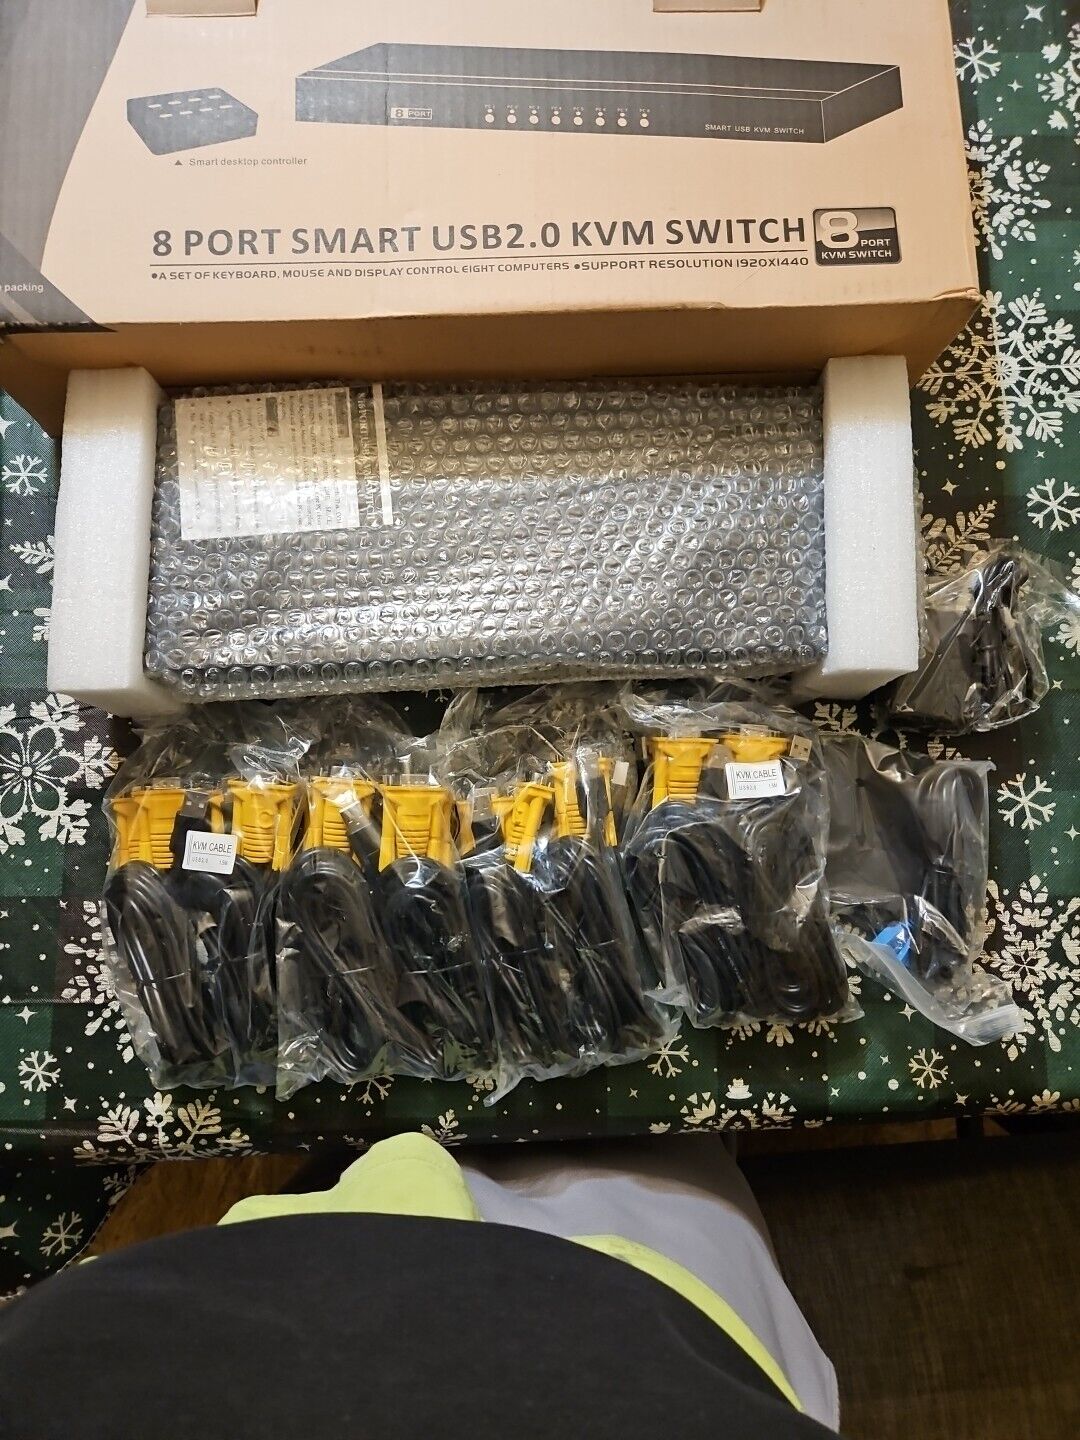 New In Box - Rijer 8 Port Smart USB2.0 KVM Switch - Plug and Play - 1920x1440